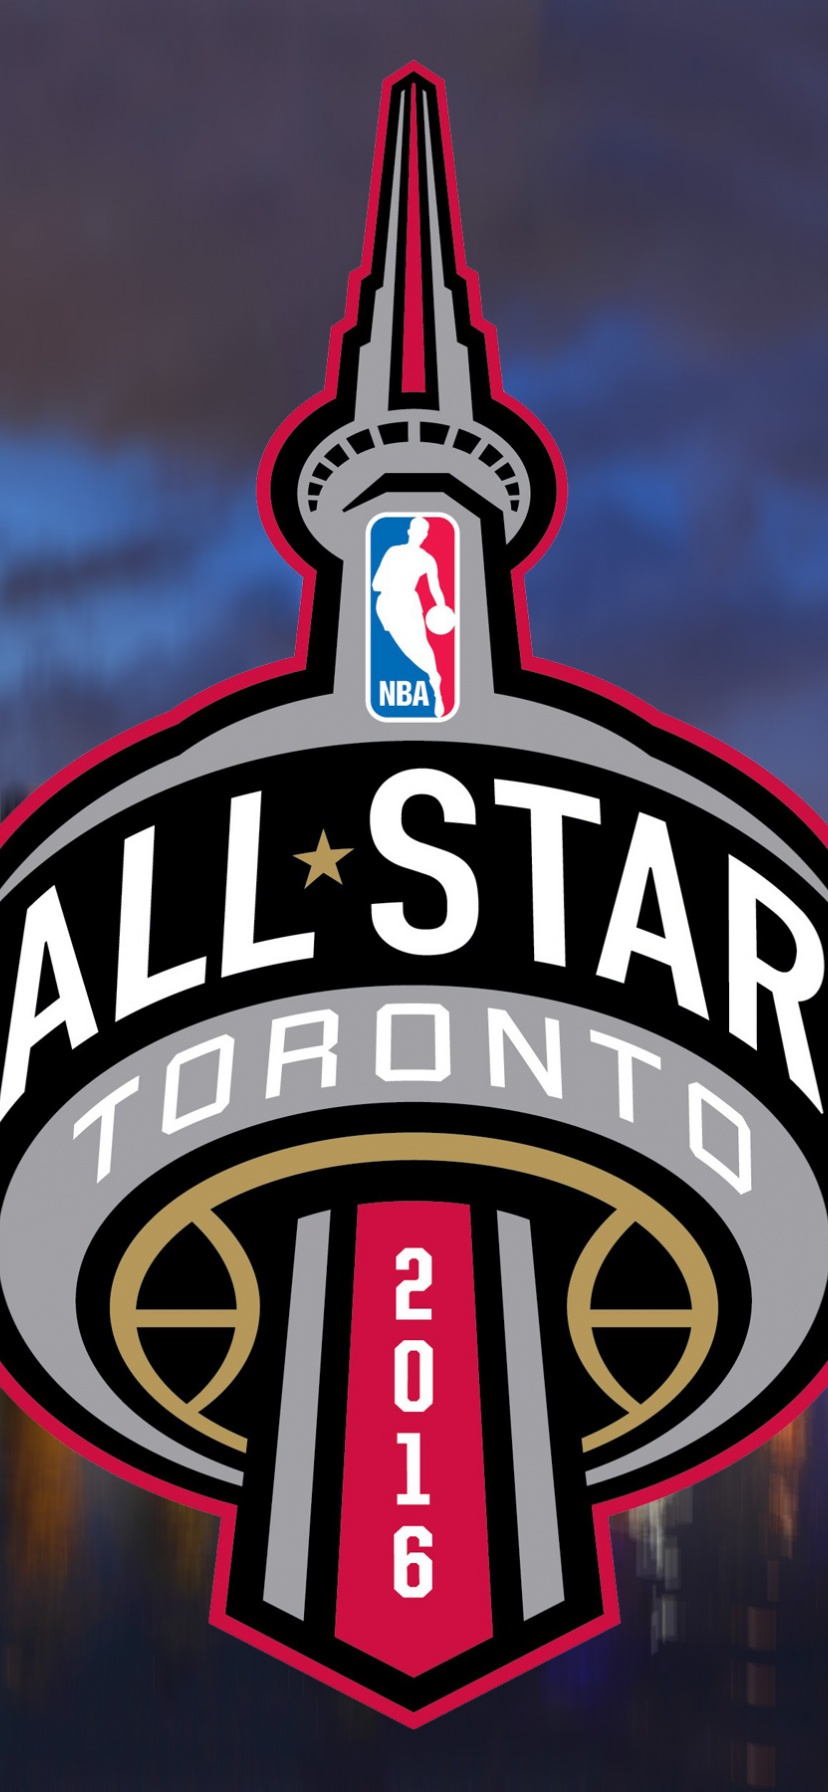 NBA All-Star 2016 Toronto